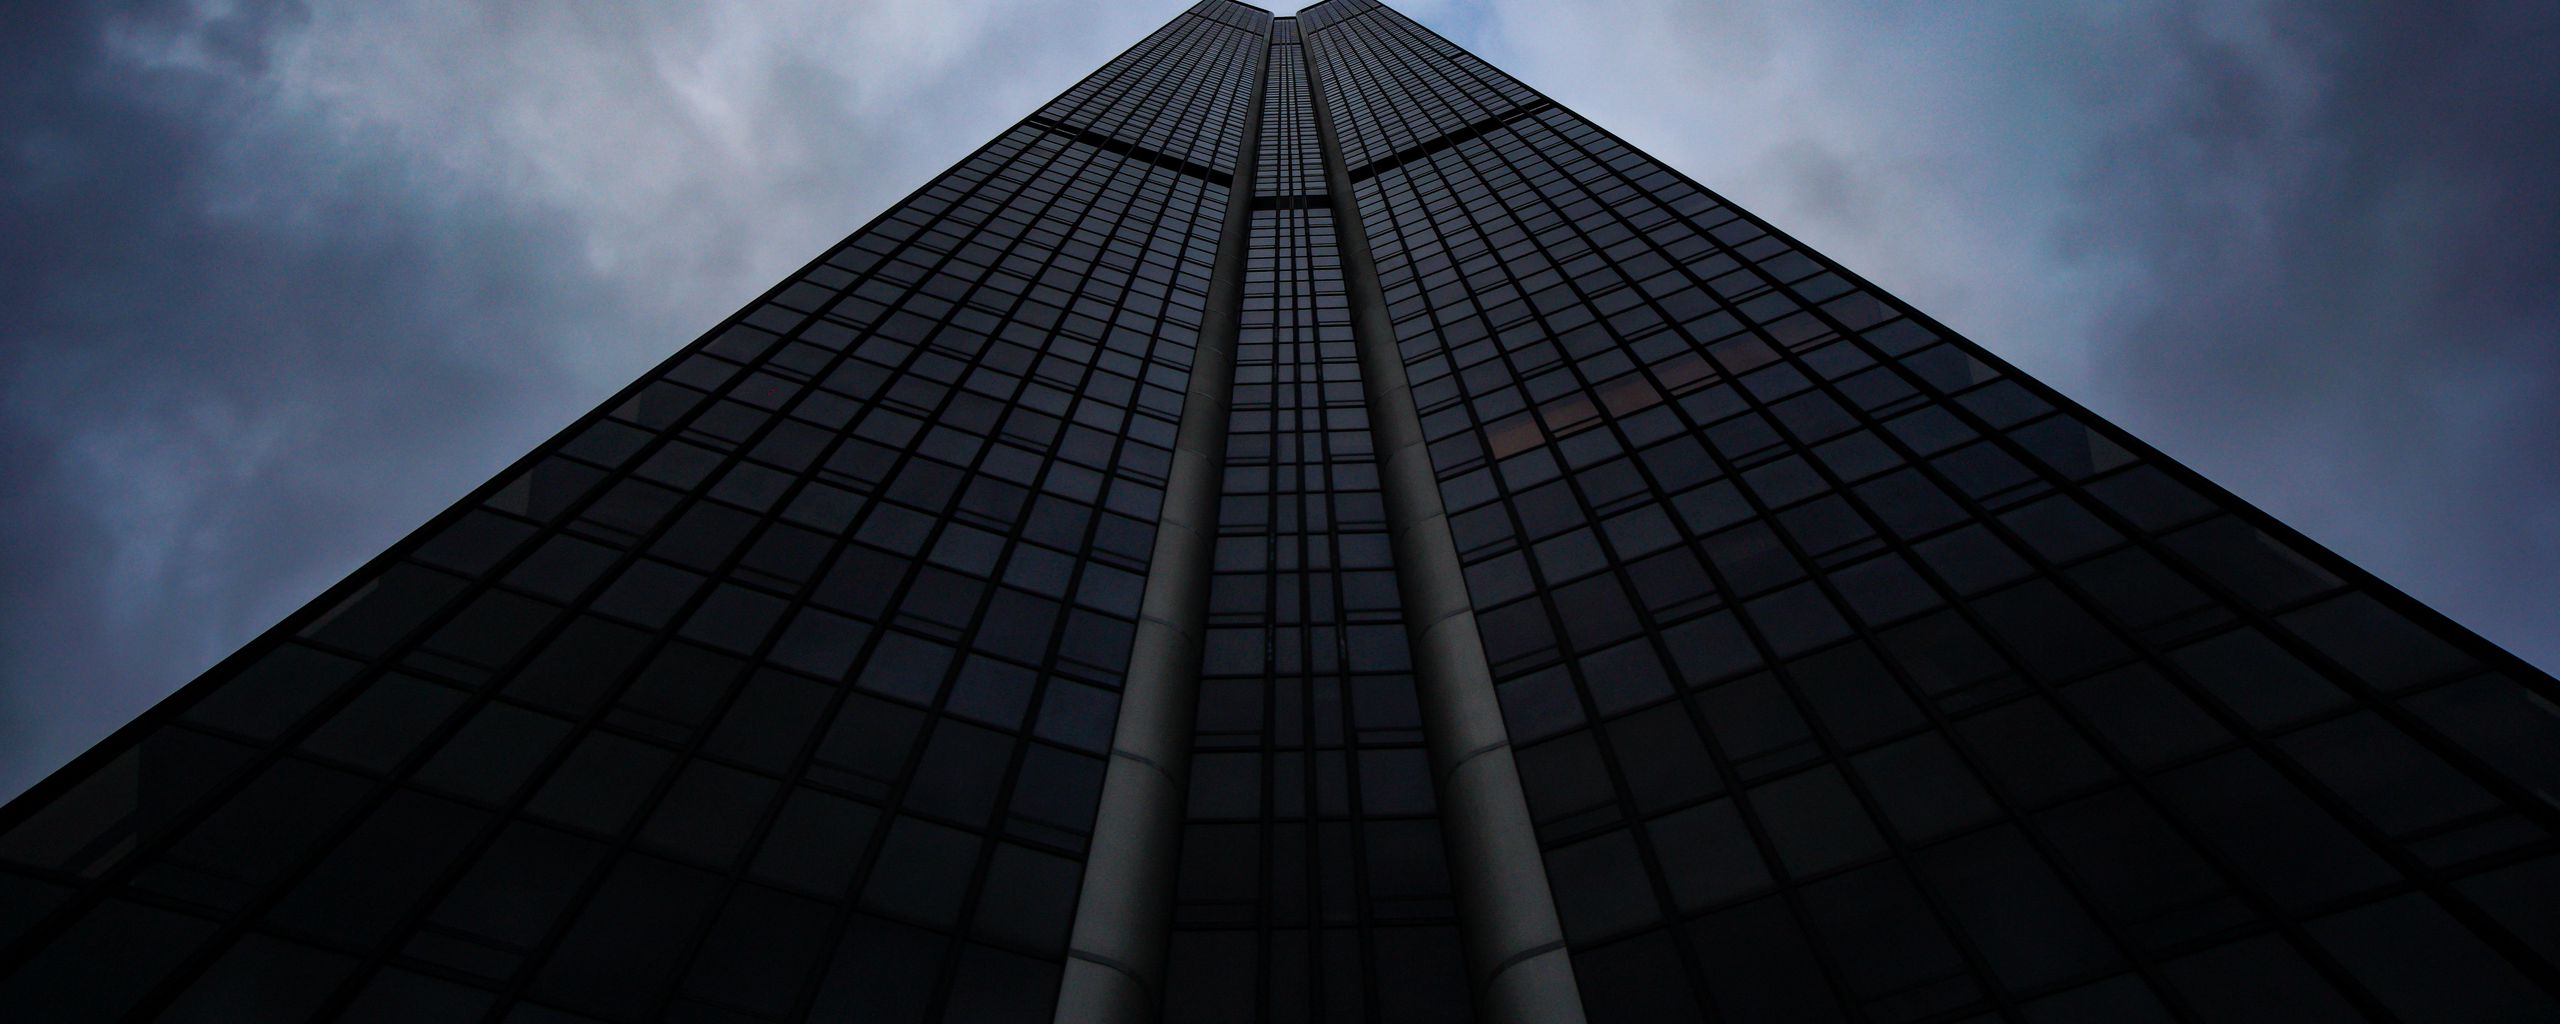 2560x1024 Wallpaper skyscraper, building, architecture, sky, bottom view